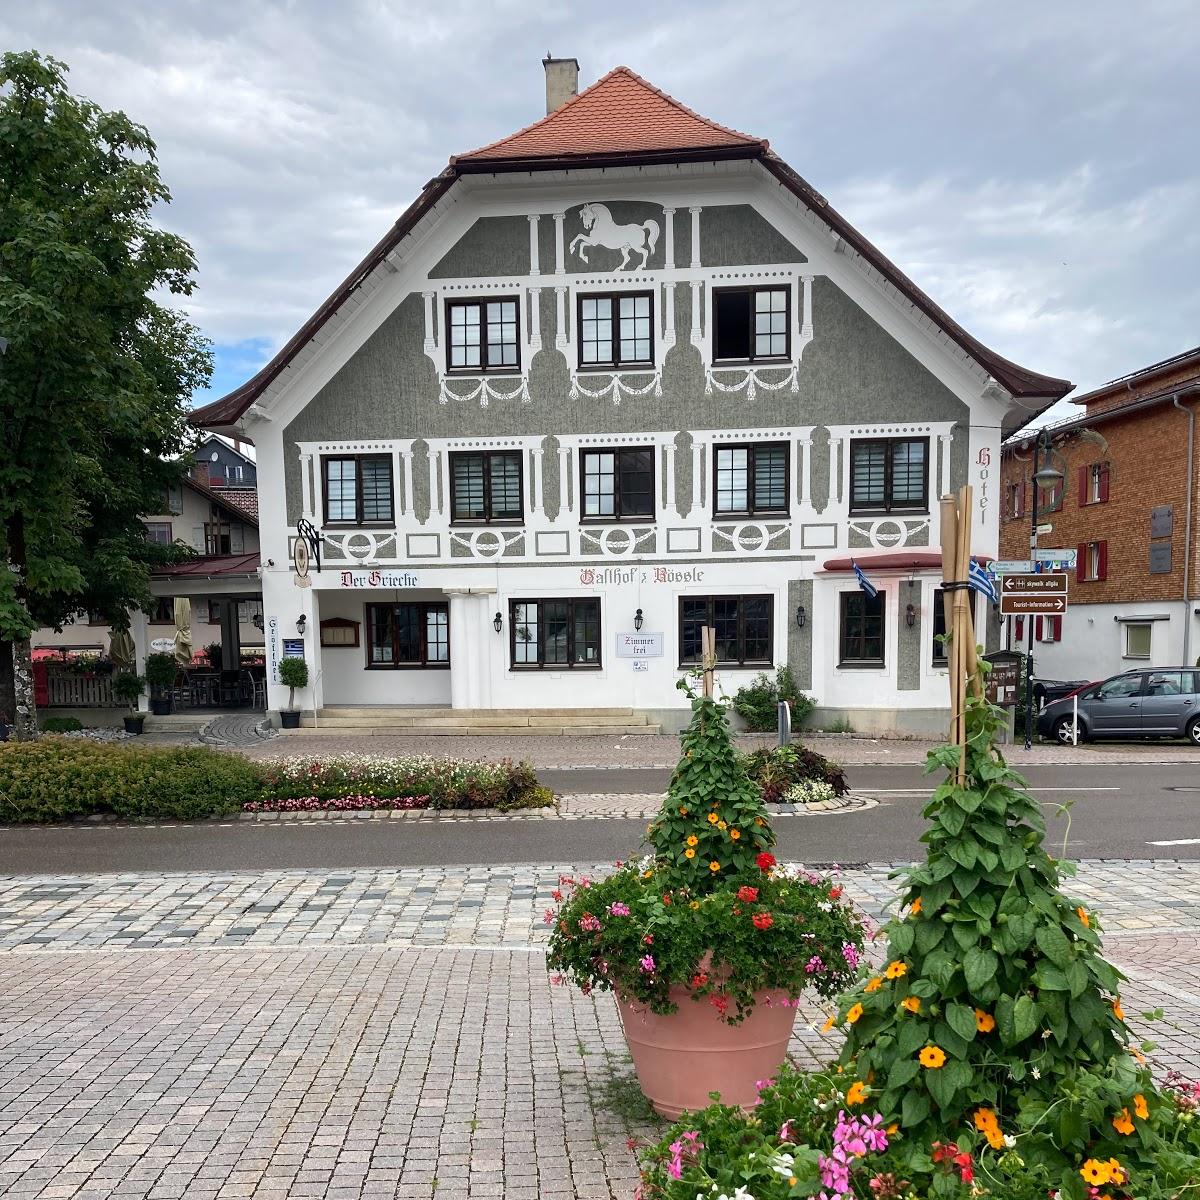 Restaurant "Hotel Rössle in" in Scheidegg